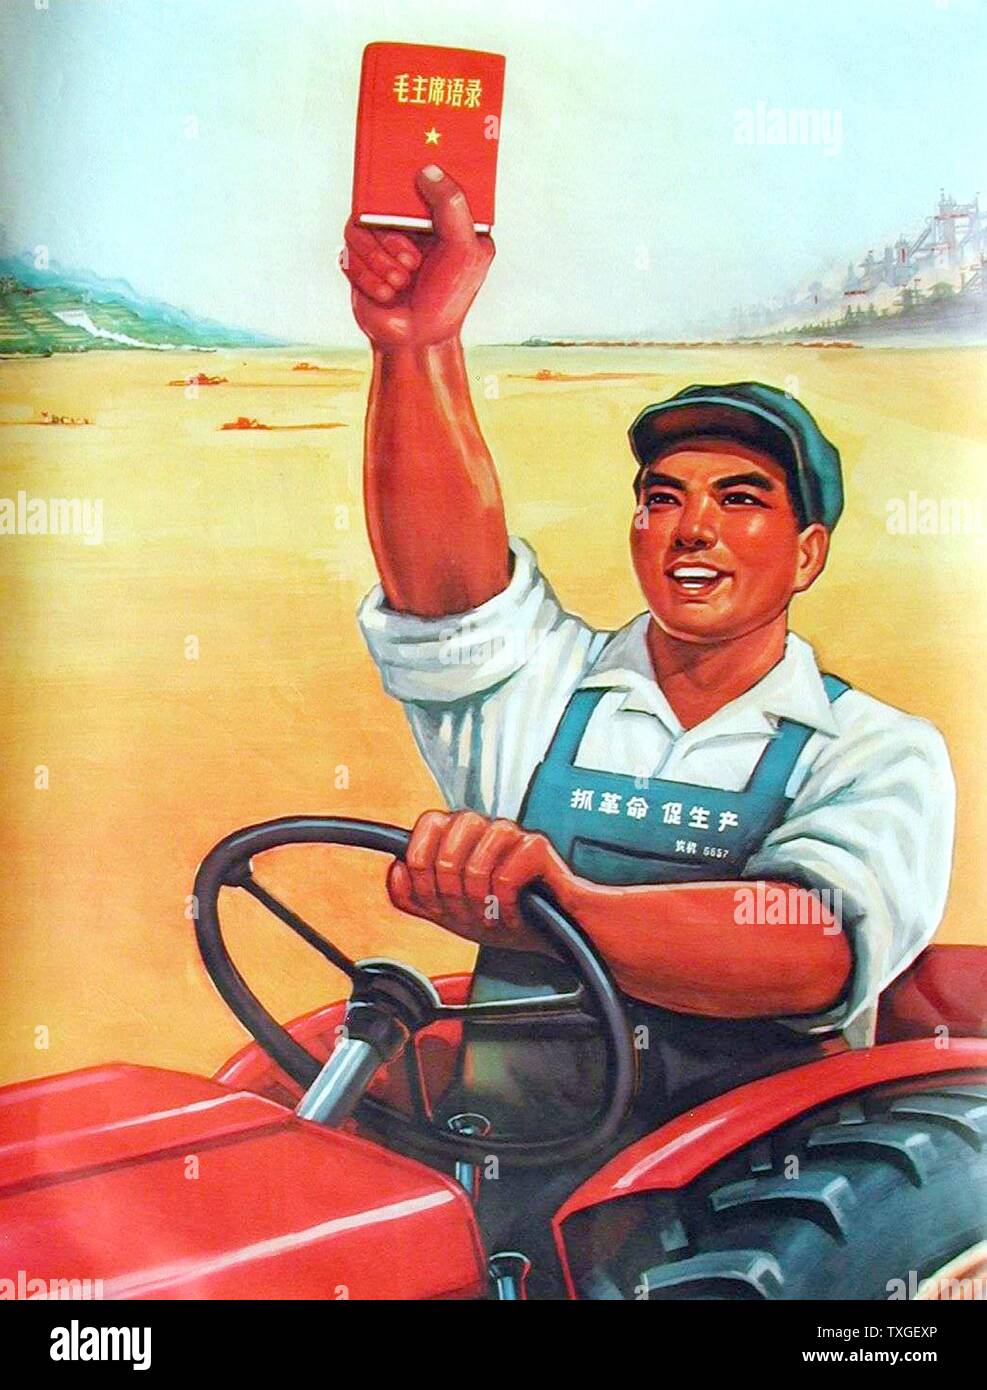 Chinese Affiches de propagande de la seconde guerre mondiale pour l'appui de l'agriculture. Datée 1944 Banque D'Images